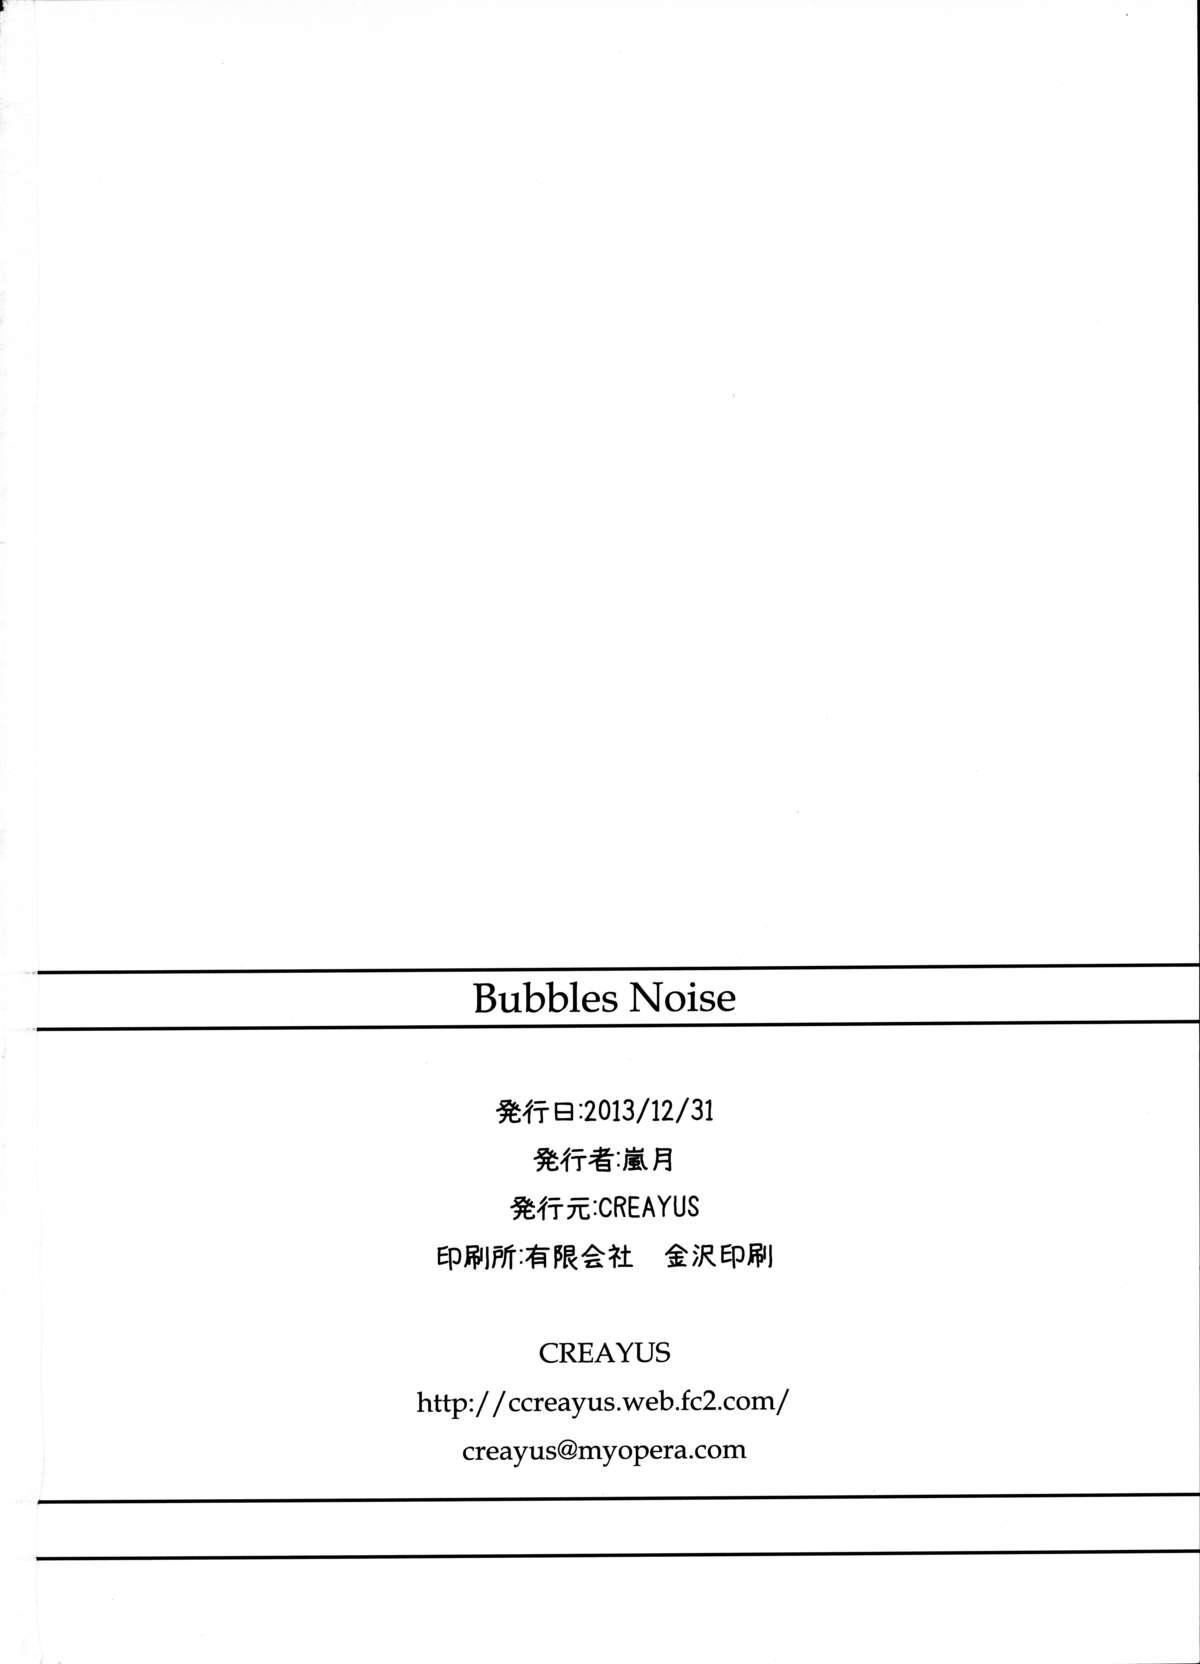 Bubbles Noise 26